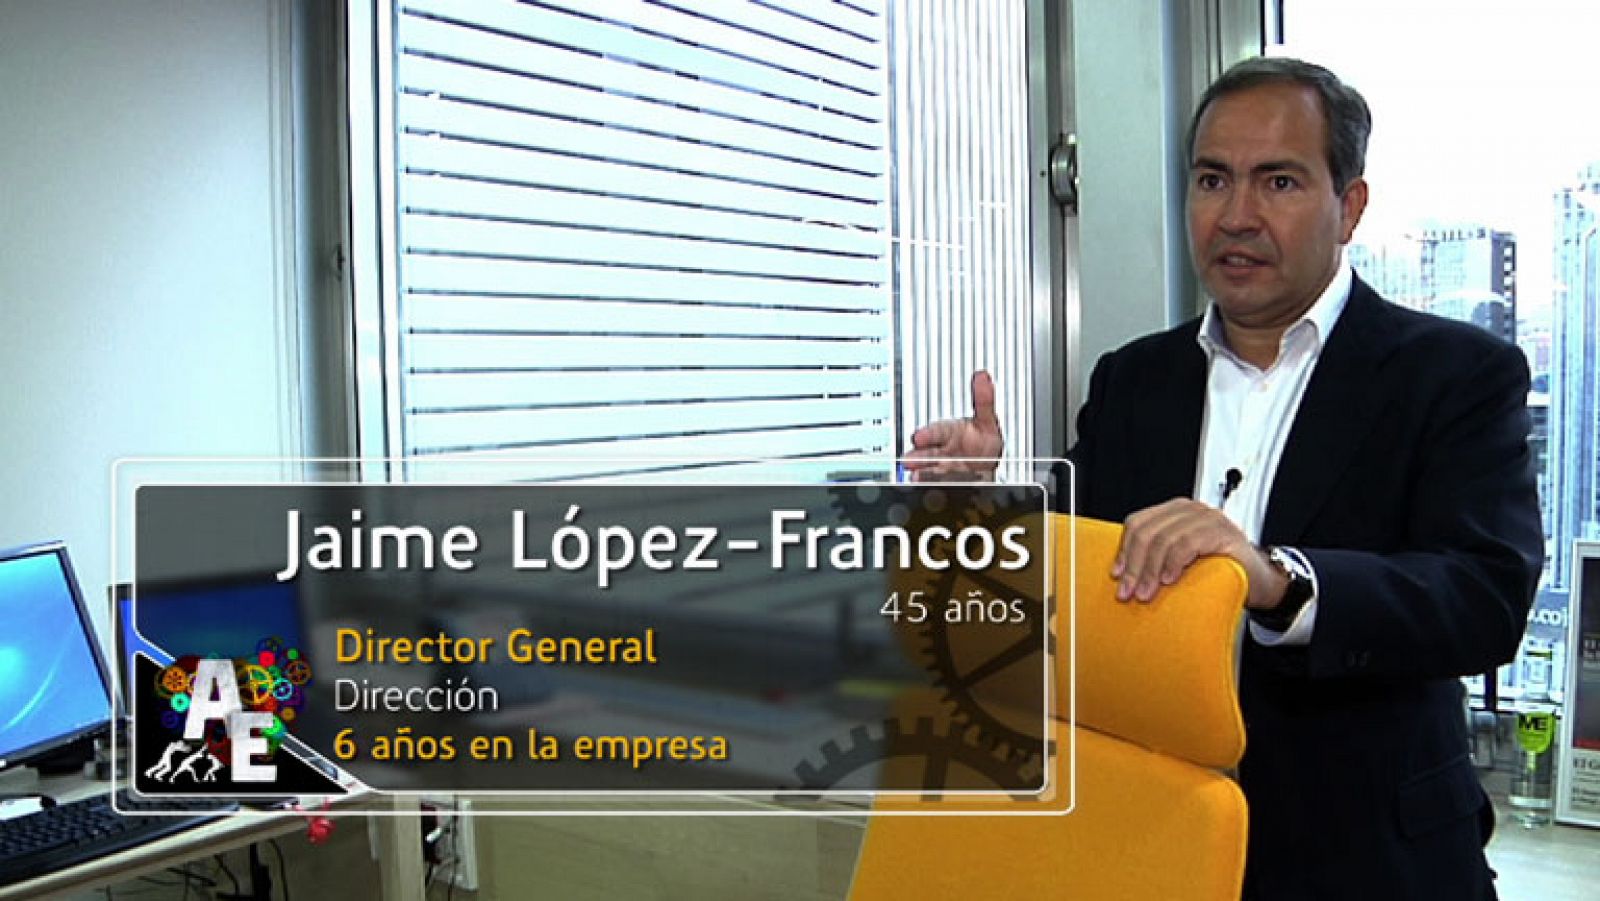 Jaime López-Francos (45 años) Director General